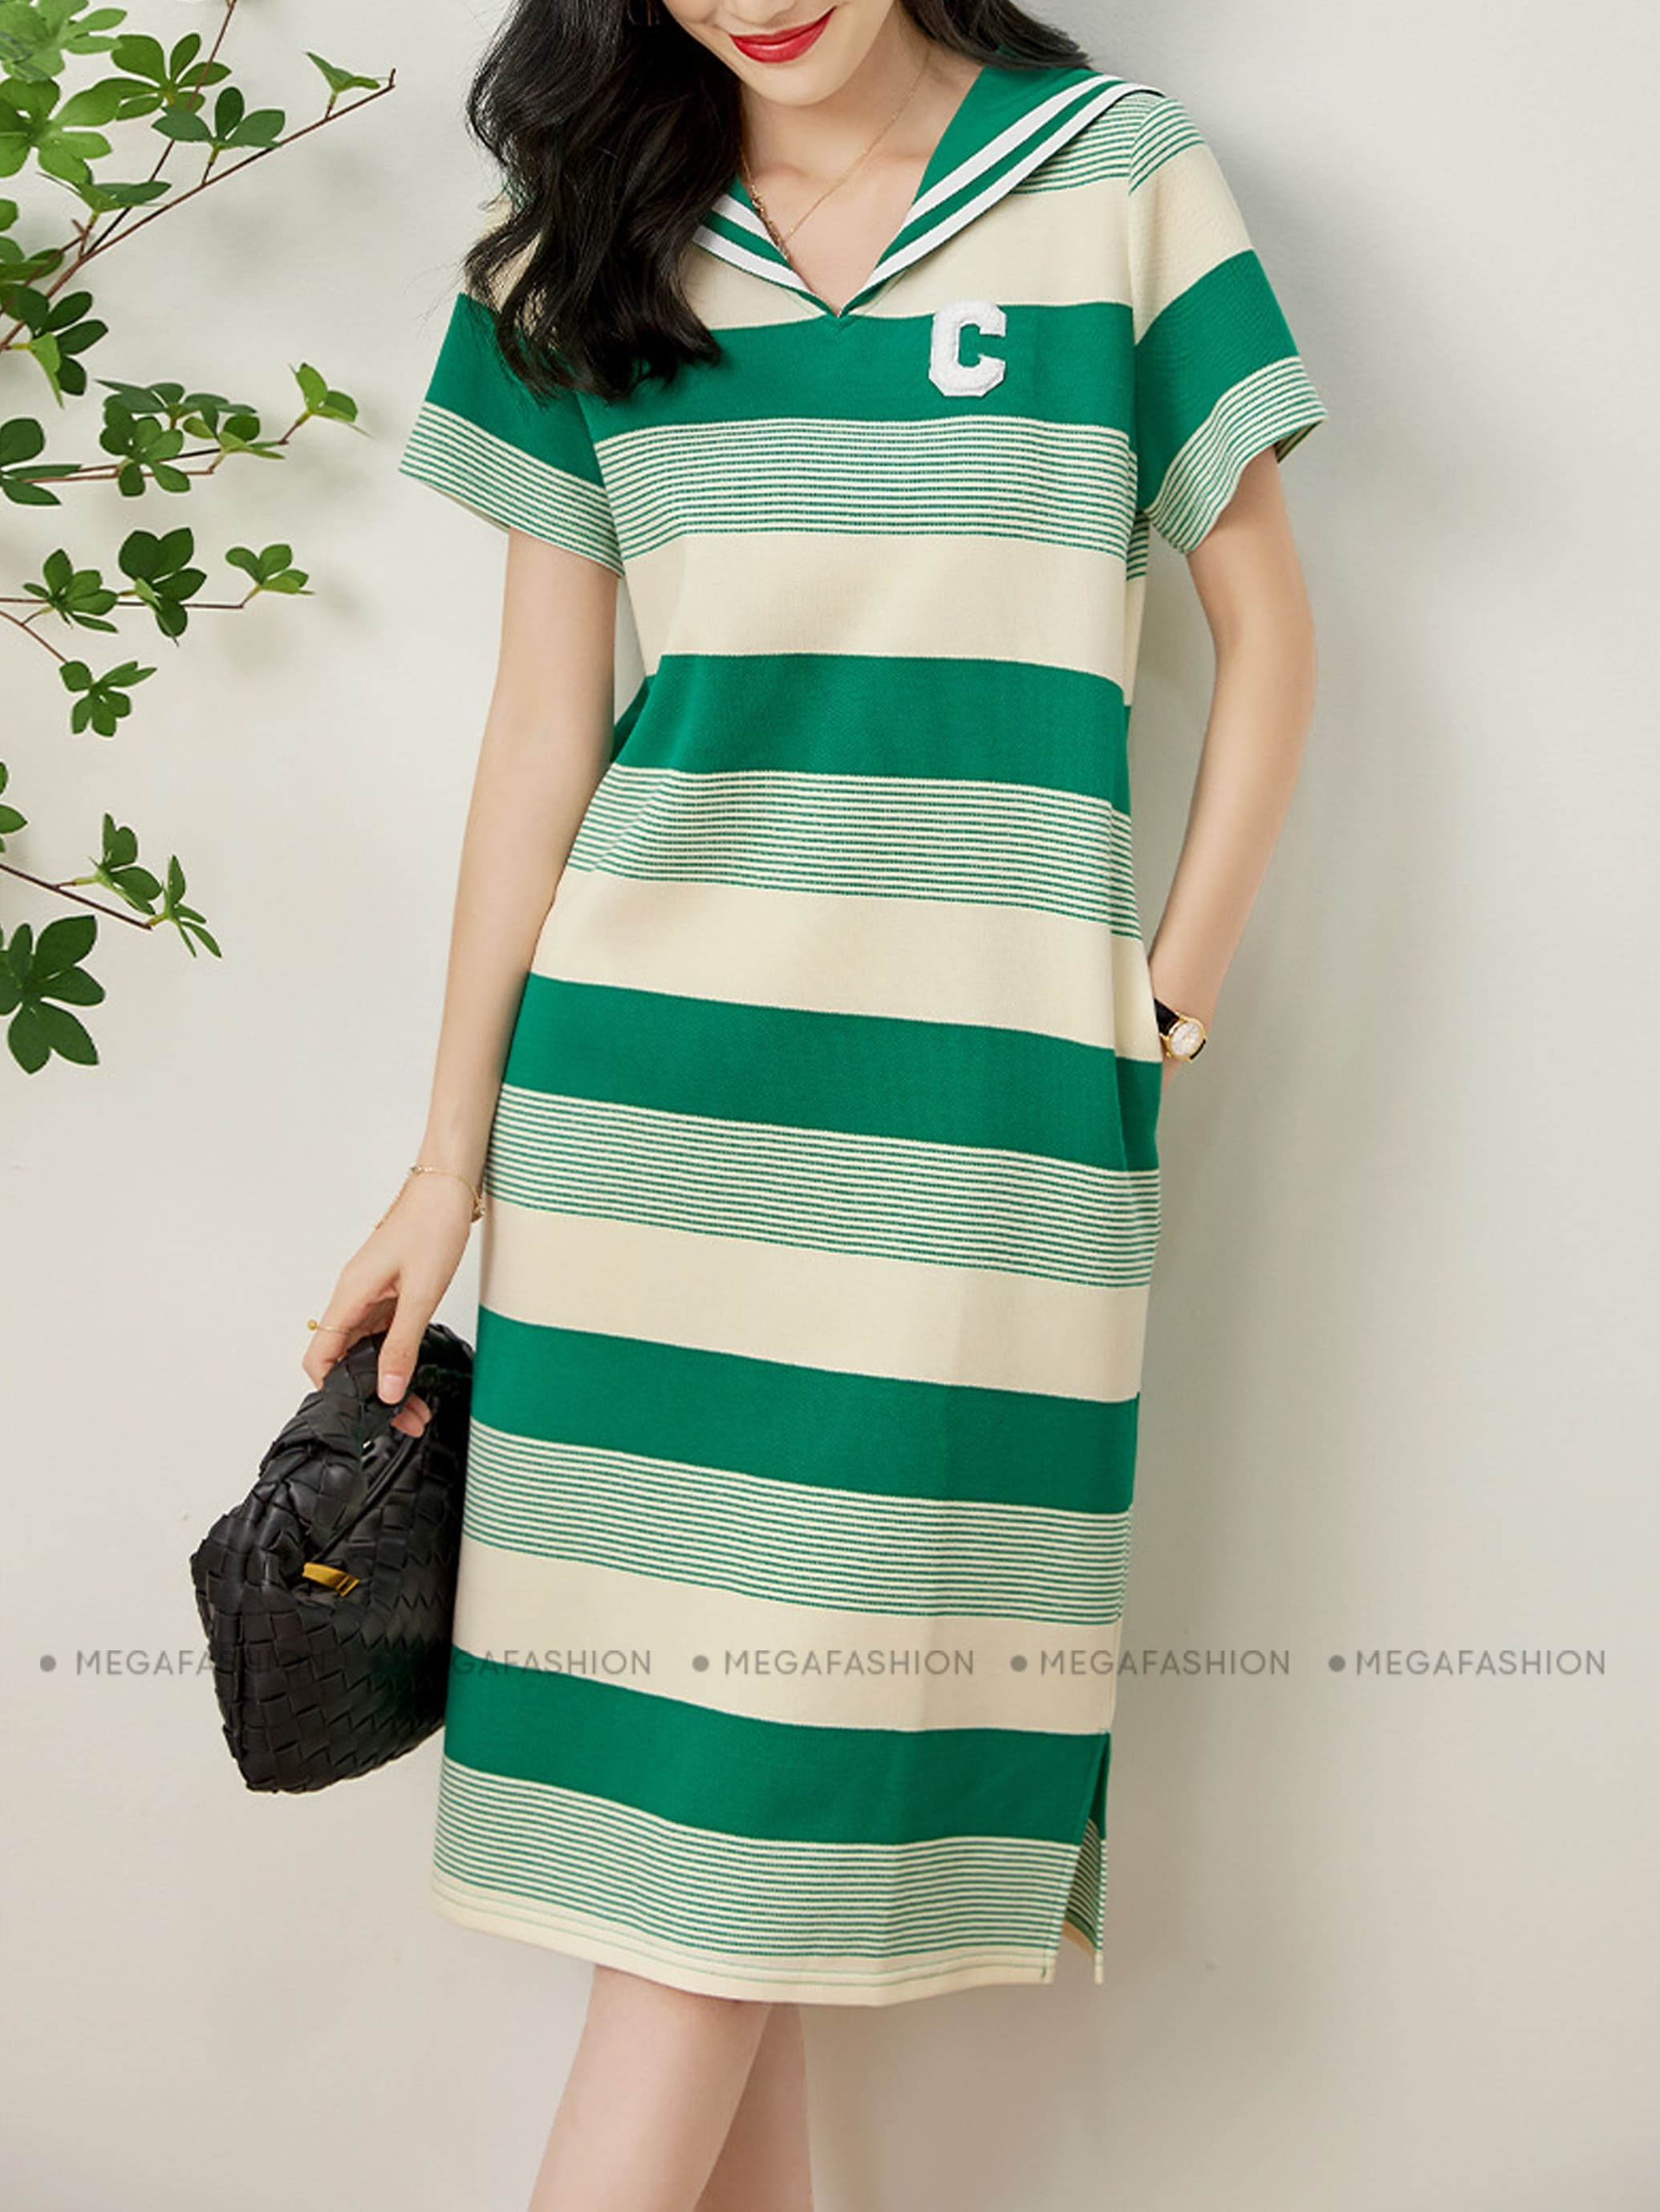 Đầm cổ lọ màu xanh lá cây – Dzung Biez Store HCM